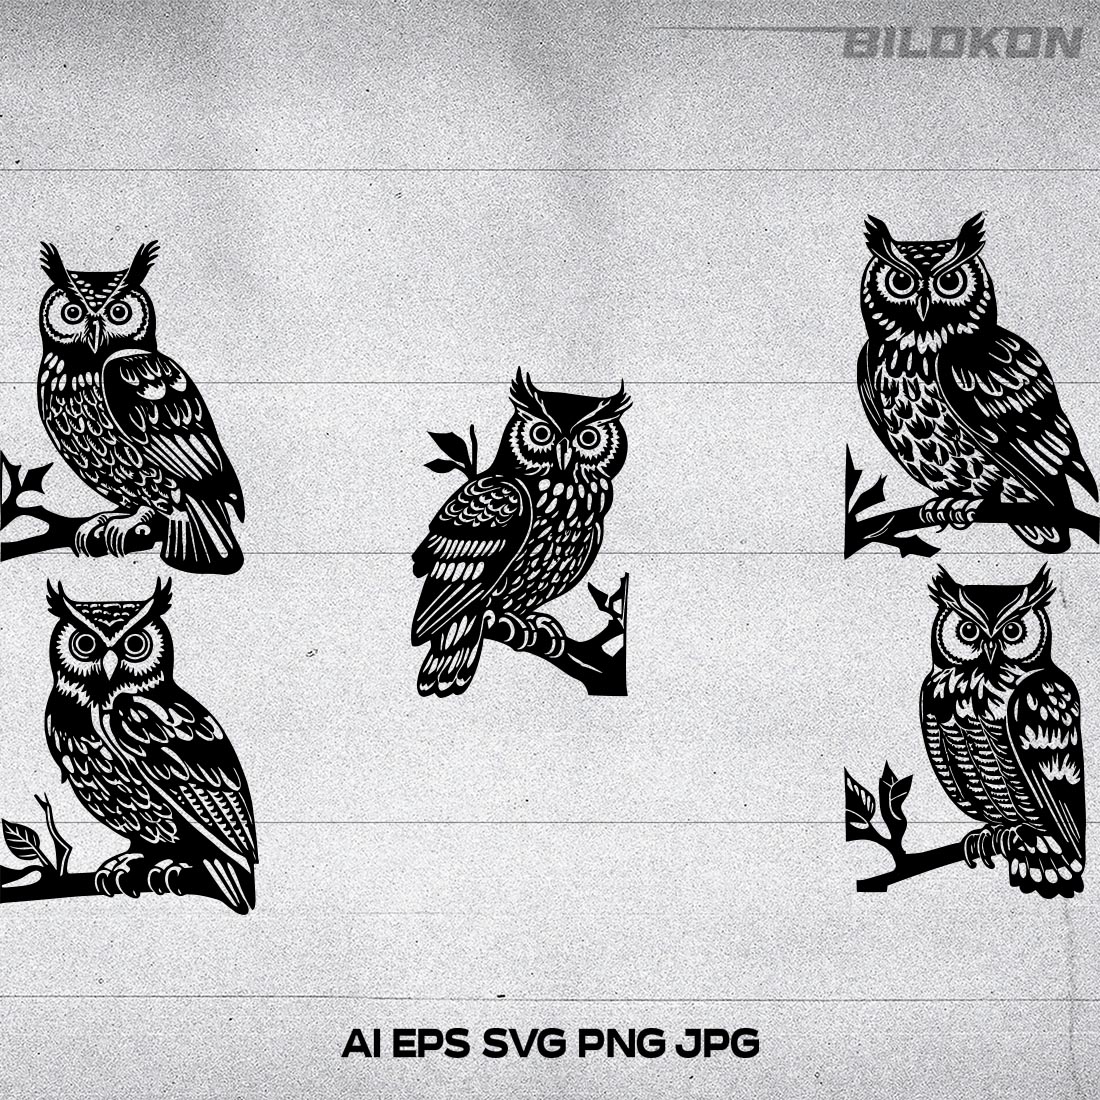 Owl sits on a branch Vector Illustration, SVG Bundle cover image.